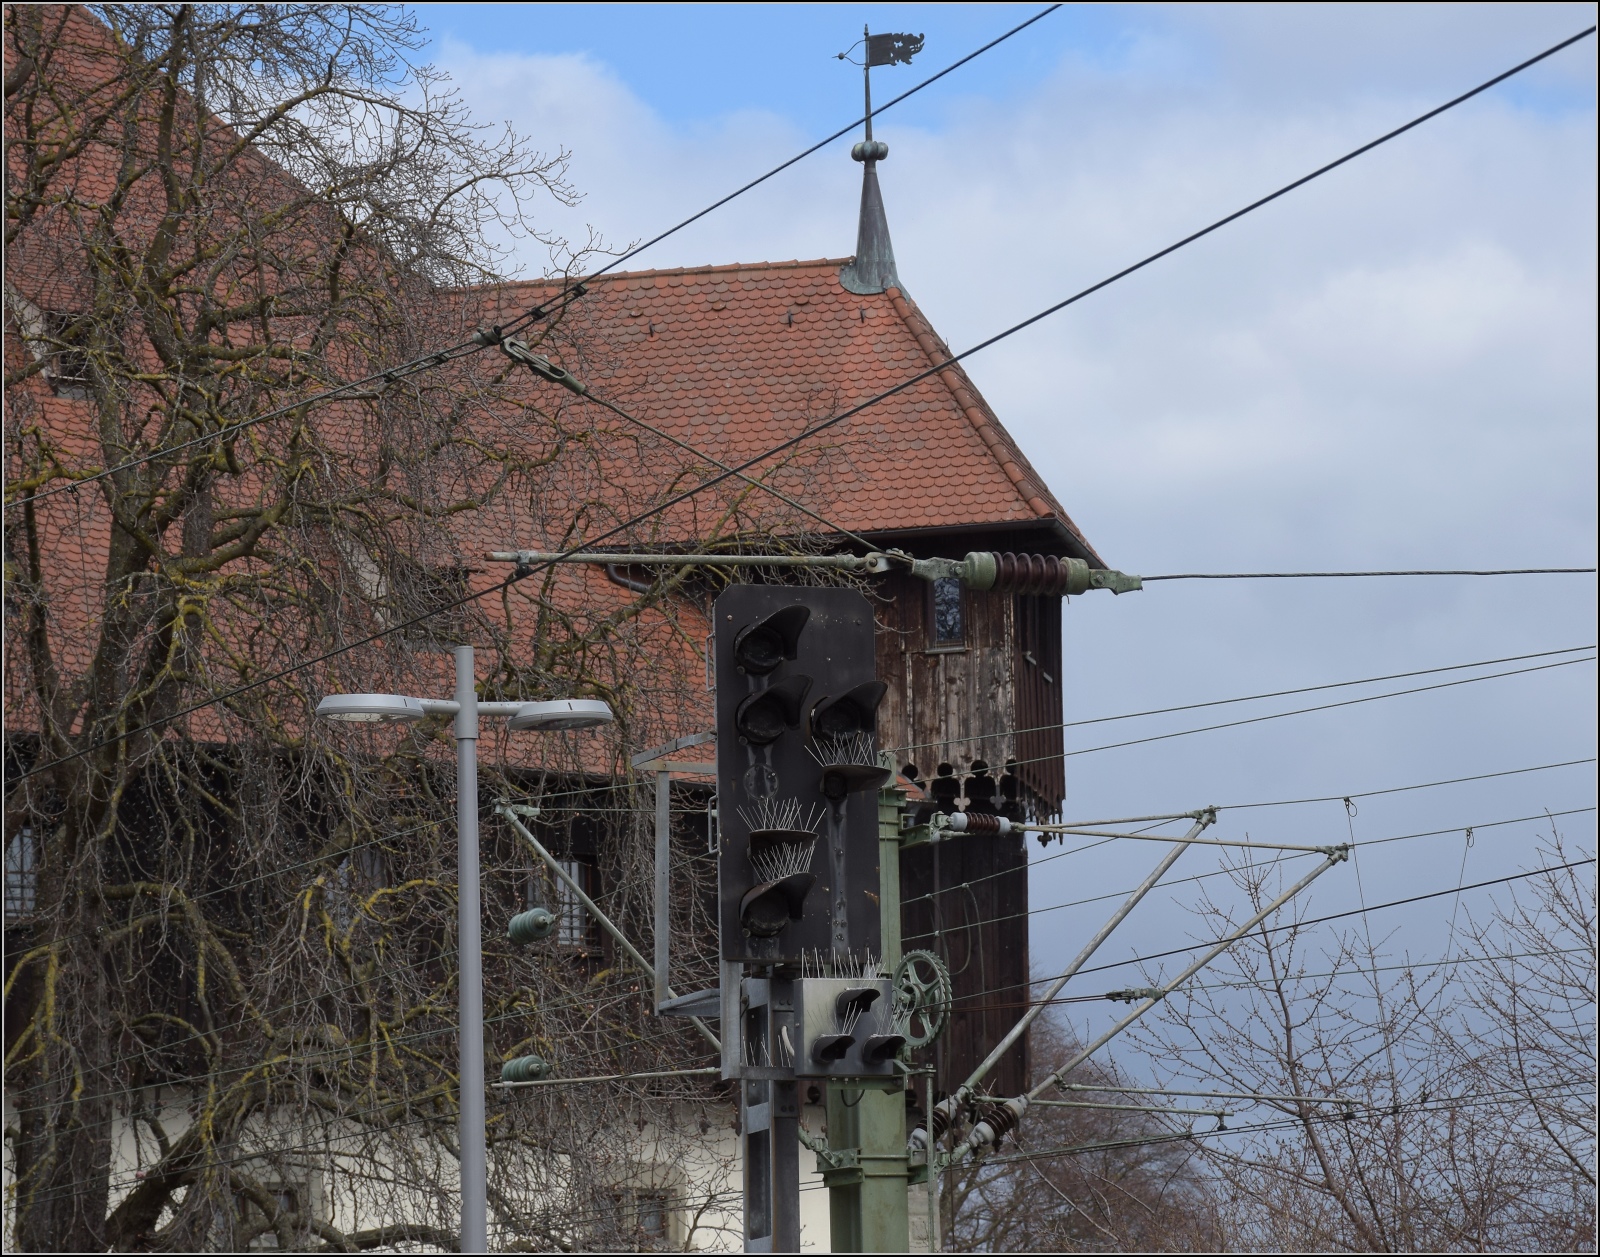 Heute streiken mal nicht Fahrzeuge, Weichen oder Signale, sondern die Mitarbeiter.

Die Signale werden allerdings heute bestreikt... Bahnhof Konstanz Richtung Süden. März 2023.